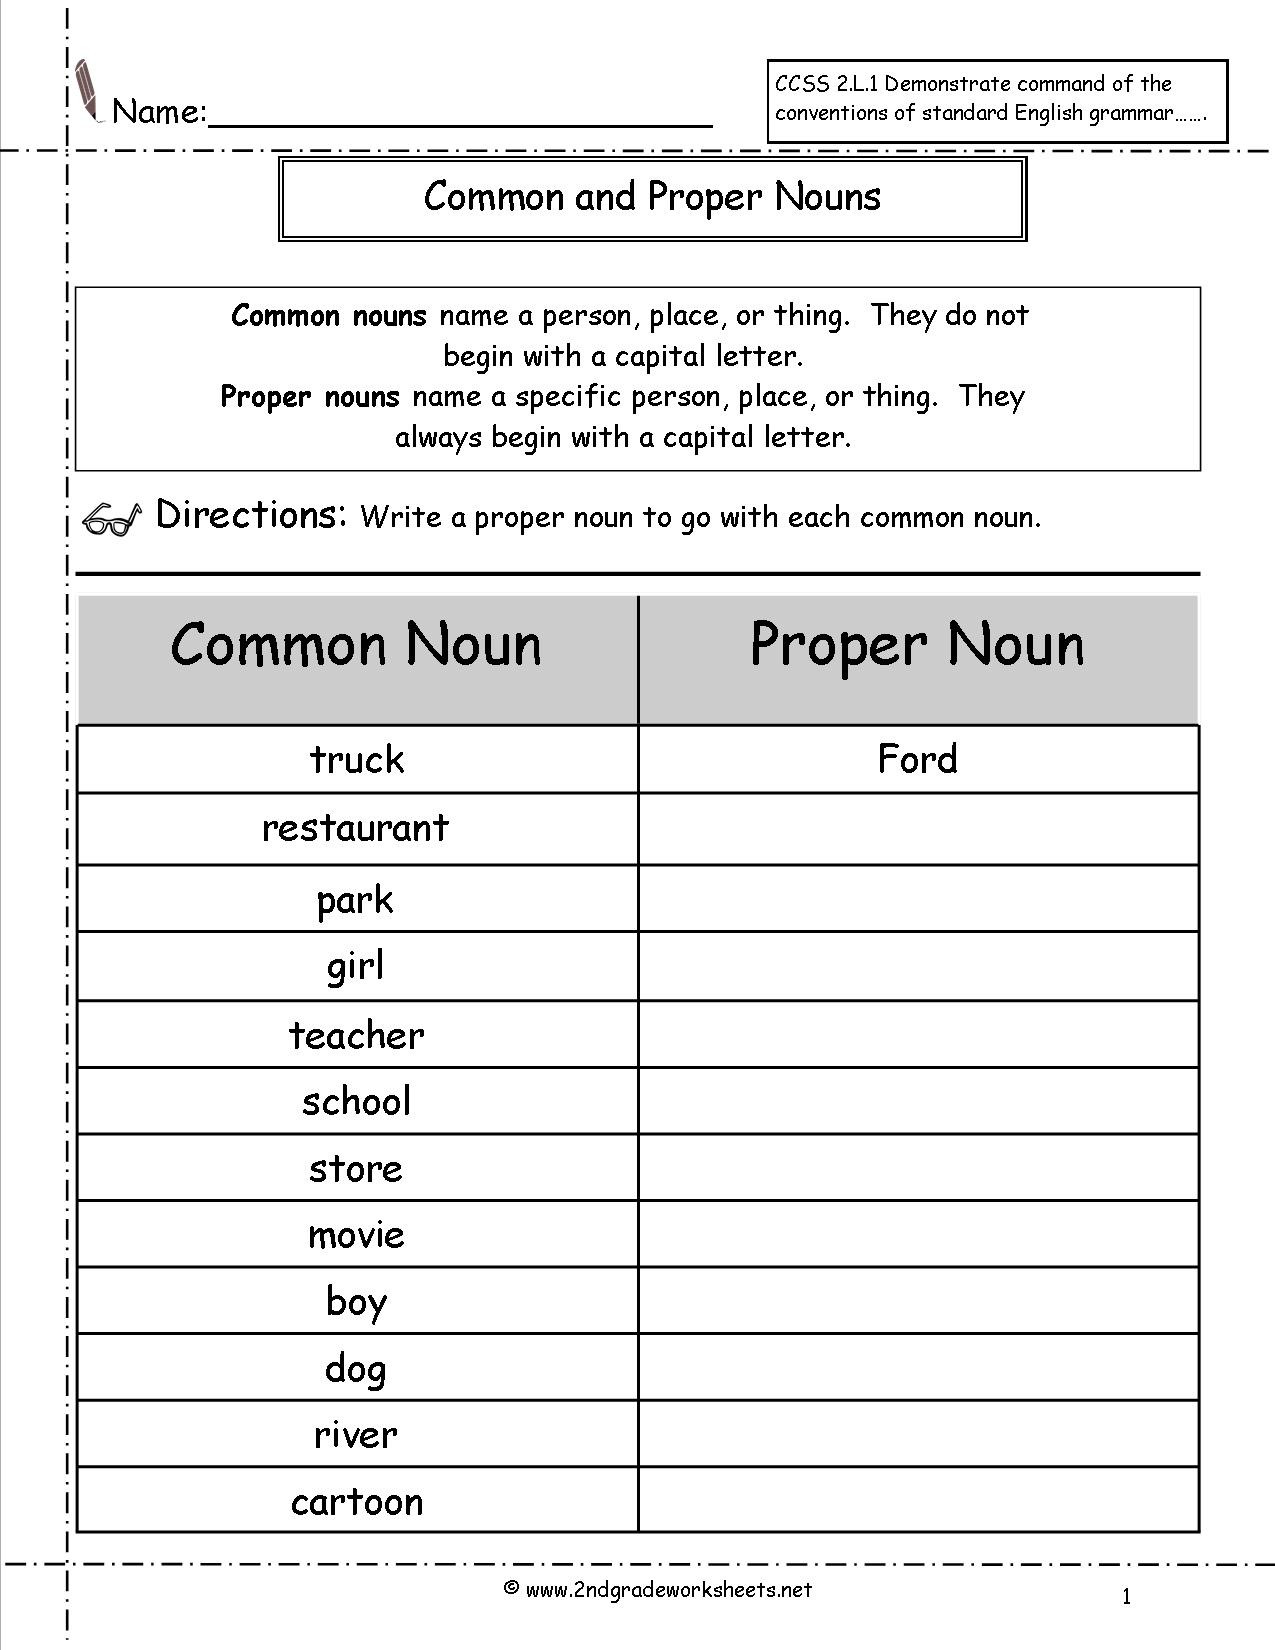 20 2nd Grade Proper Nouns Worksheet Desalas Template